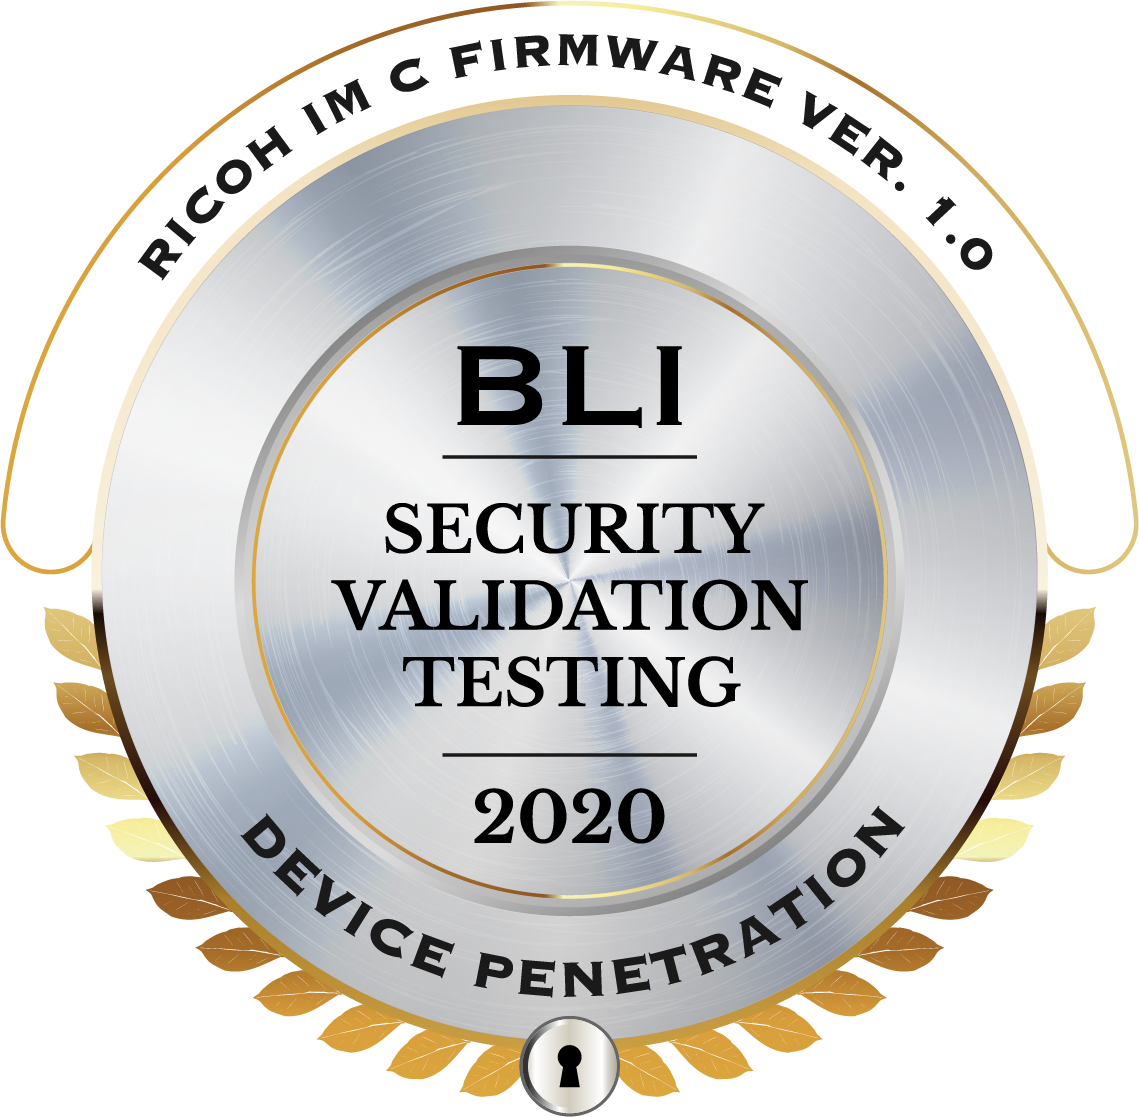 Ricoh prošel přísným bezpečnostním testovacím programem společnosti Keypoint Intelligence pro multifunkční zařízení